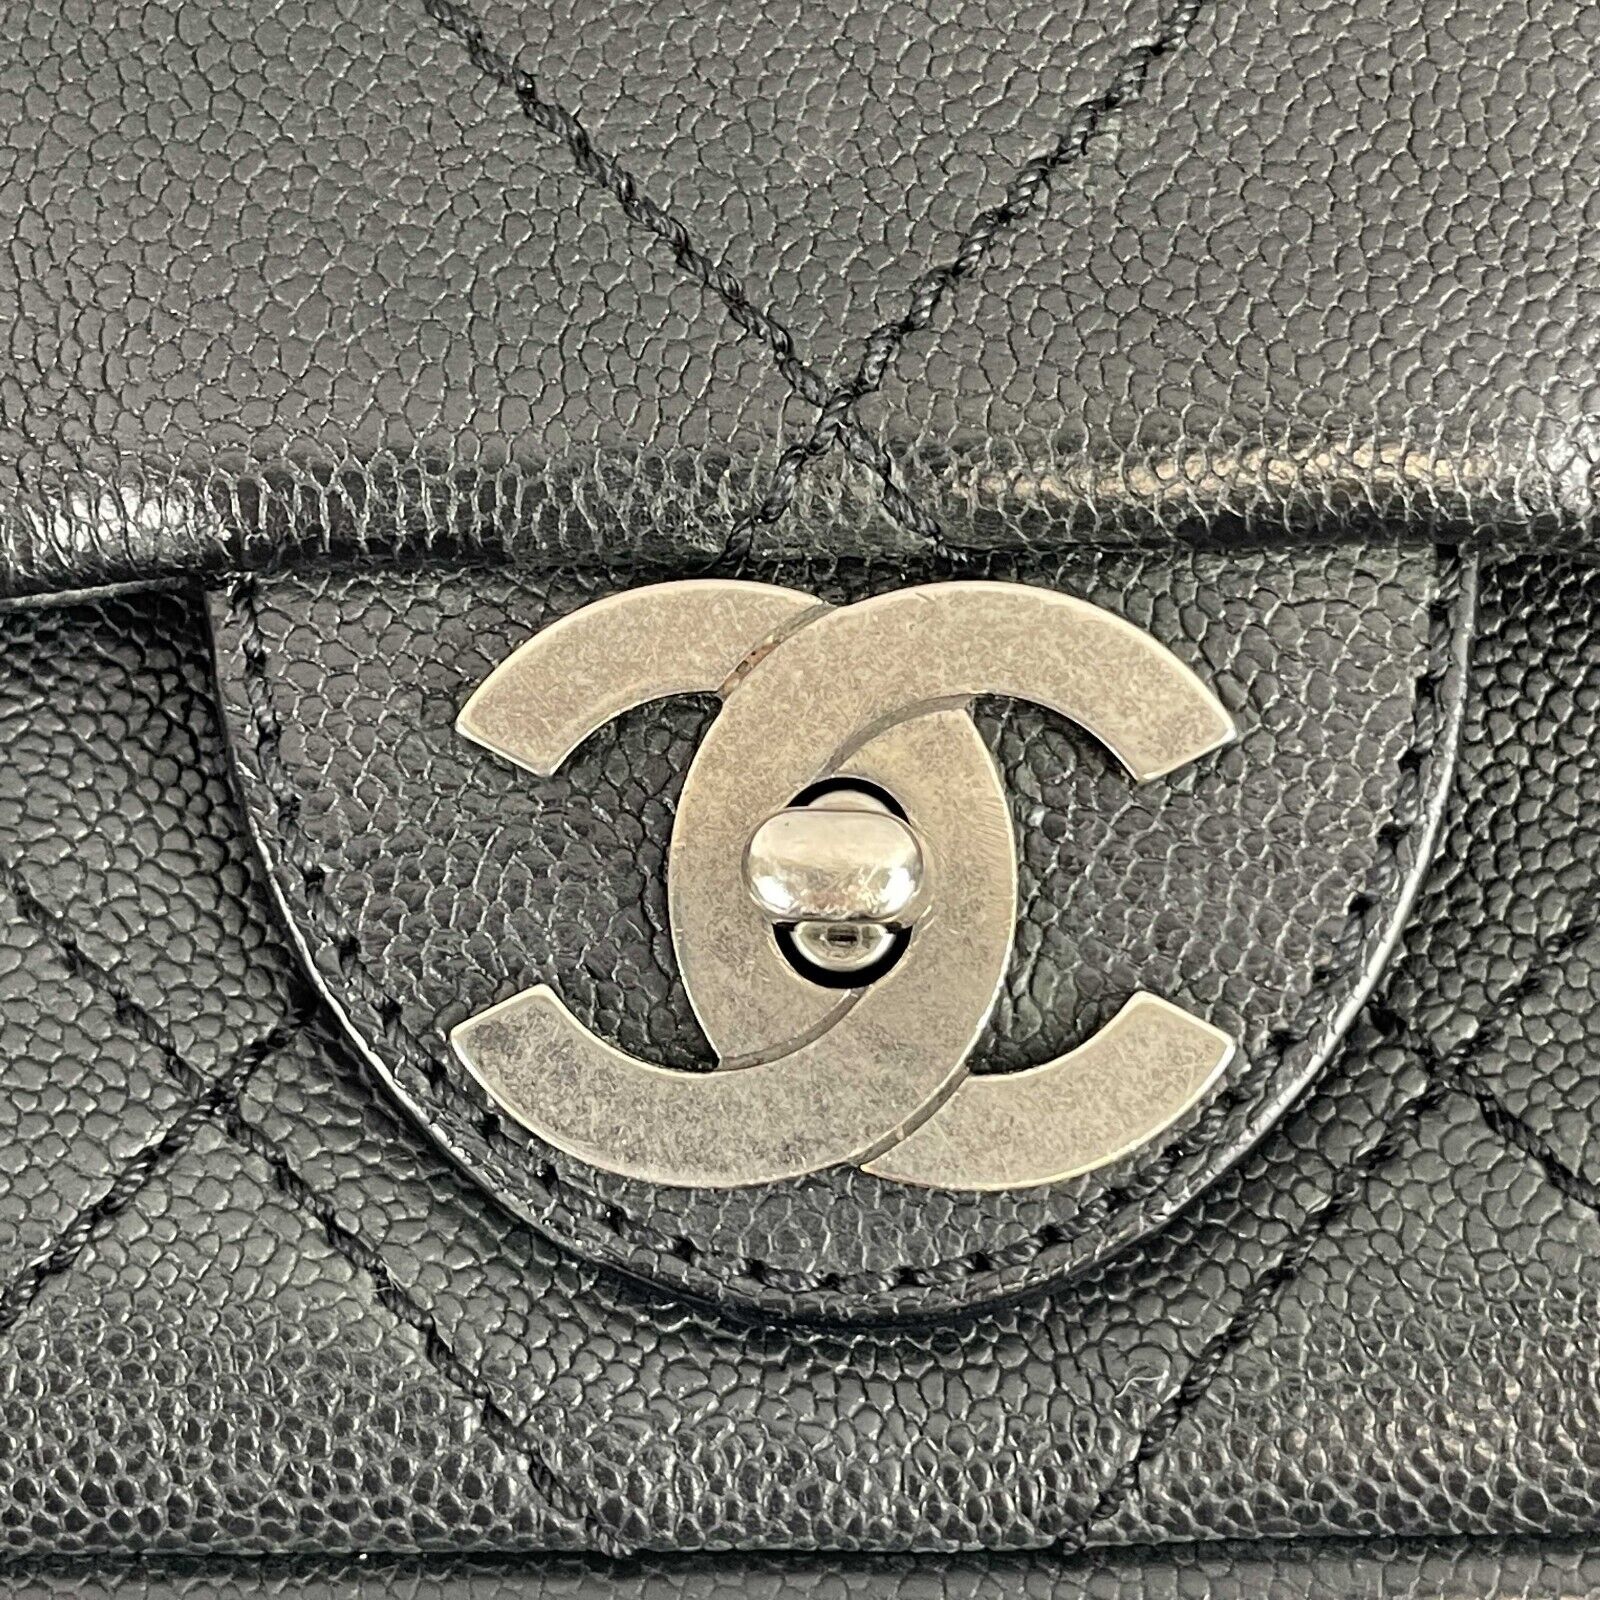 Chanel - CC Ligne Flap Large Bag Black / Silver Caviar Leather Shoulder Bag